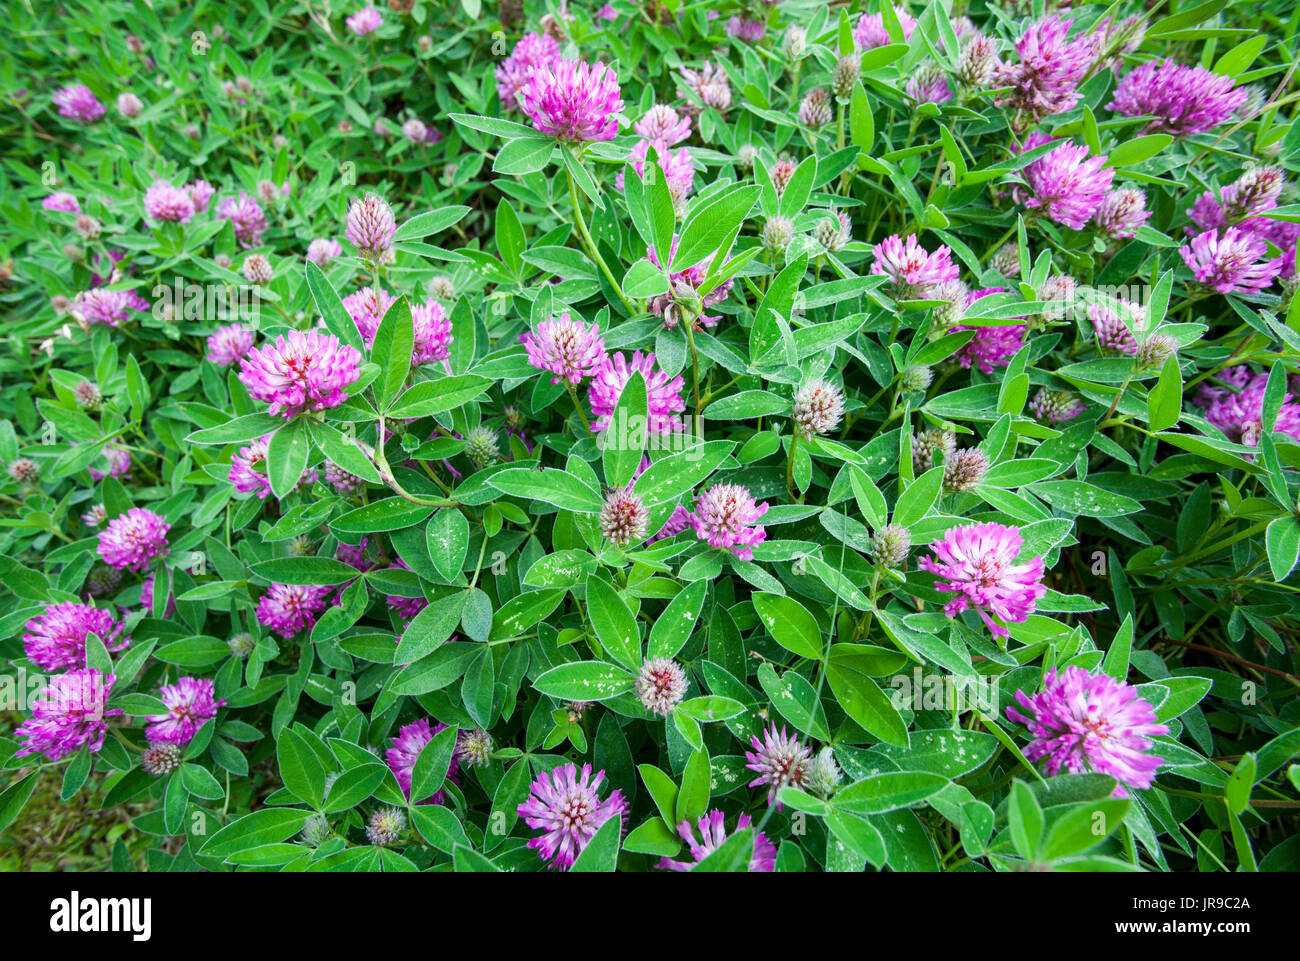 Zigzag clover (Trifolium medium) Stock Photo